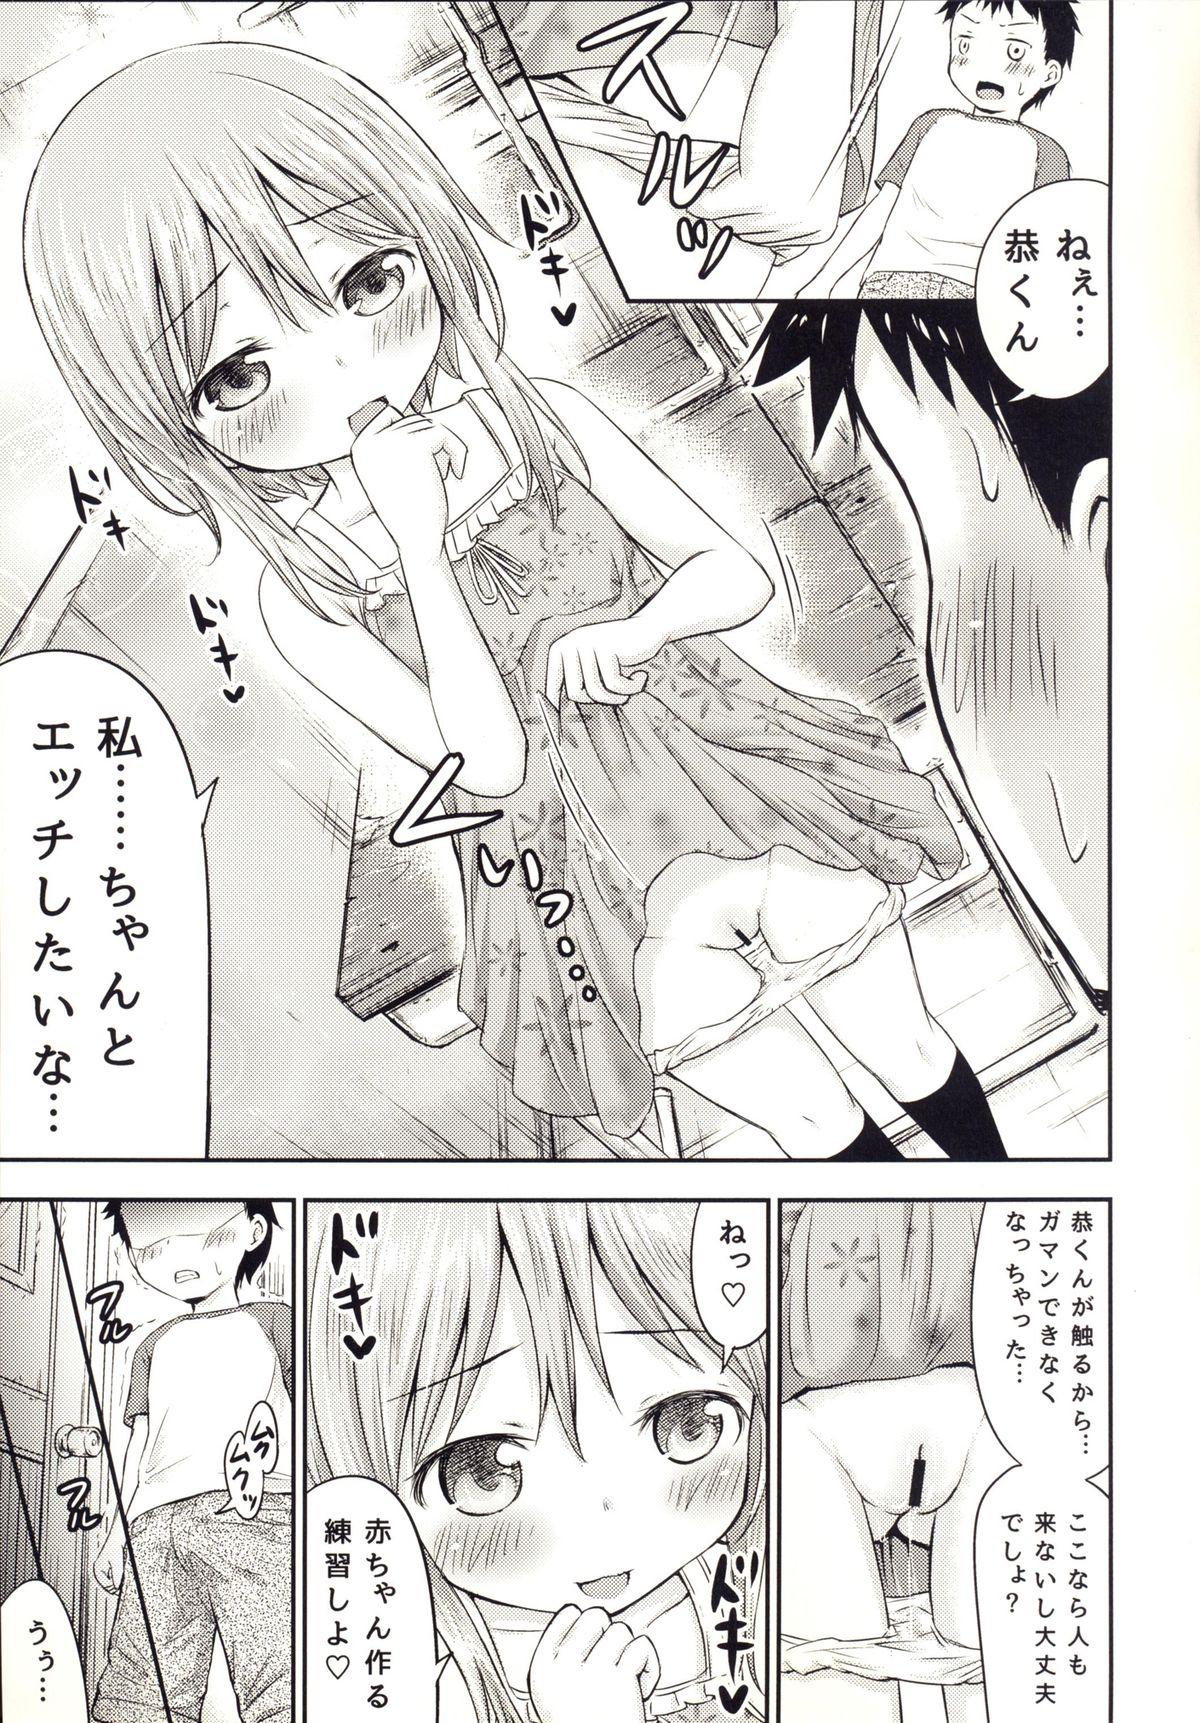 She Chiisana Seikatsu 3 Milf Porn - Page 10